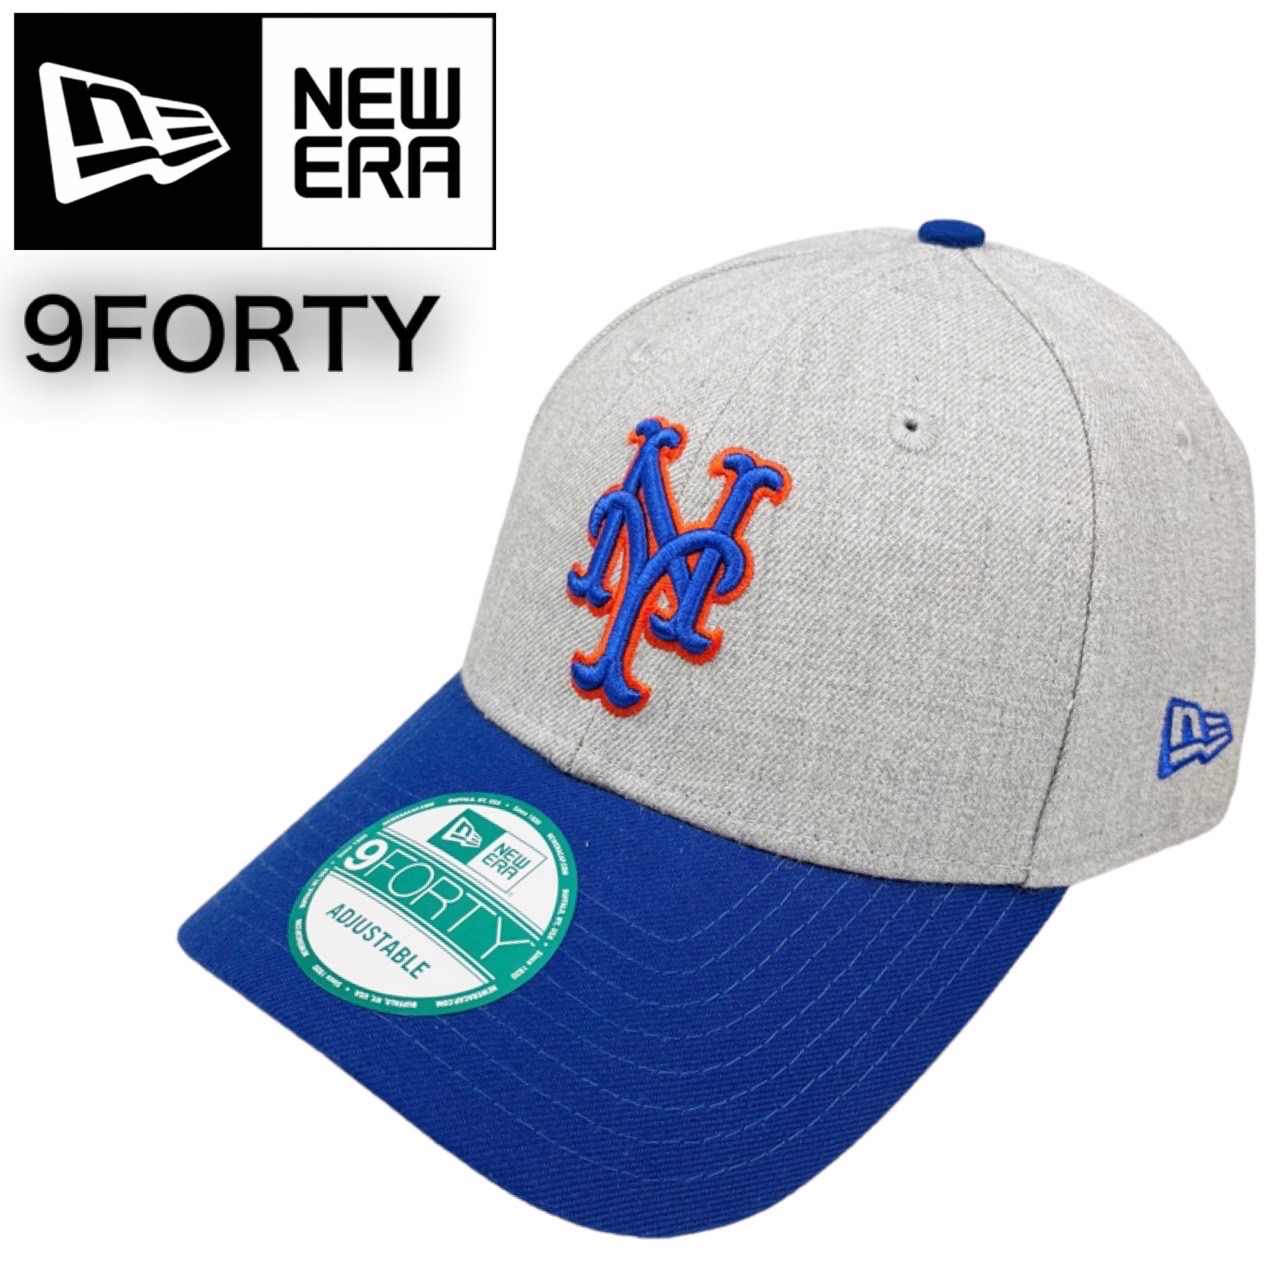 New Era Cap 3/8 ツバ裏ブルー ニューエラ メッツ キャップ 帽子 キャップ 最安値挑戦